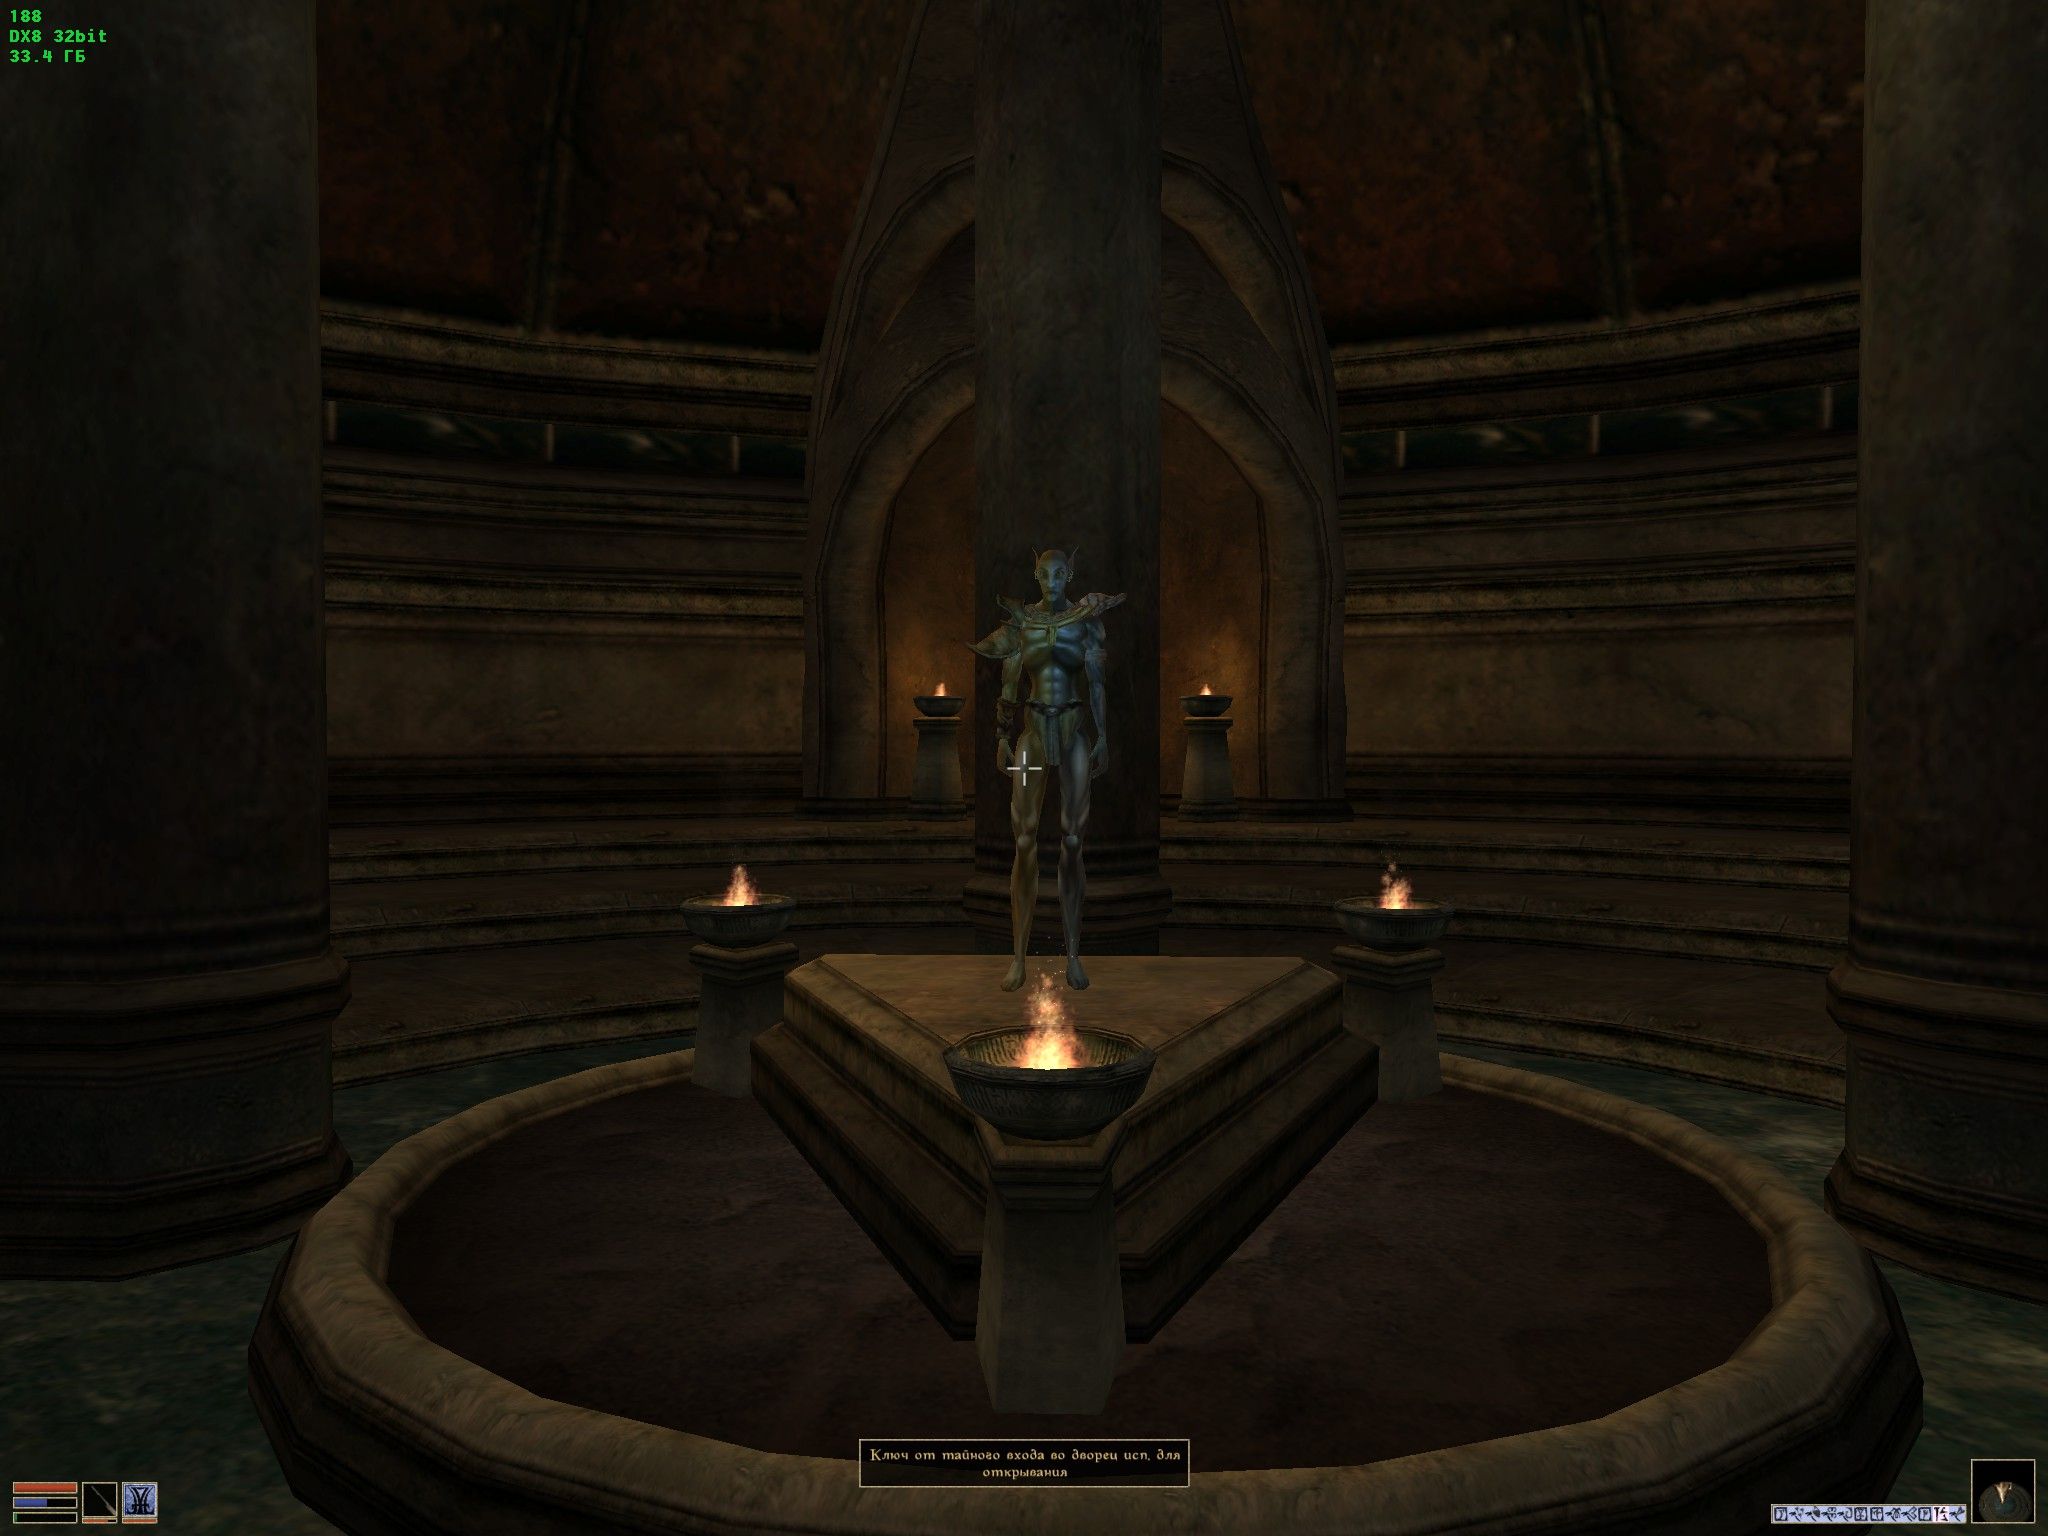 The Elder Scrolls III: Morrowind